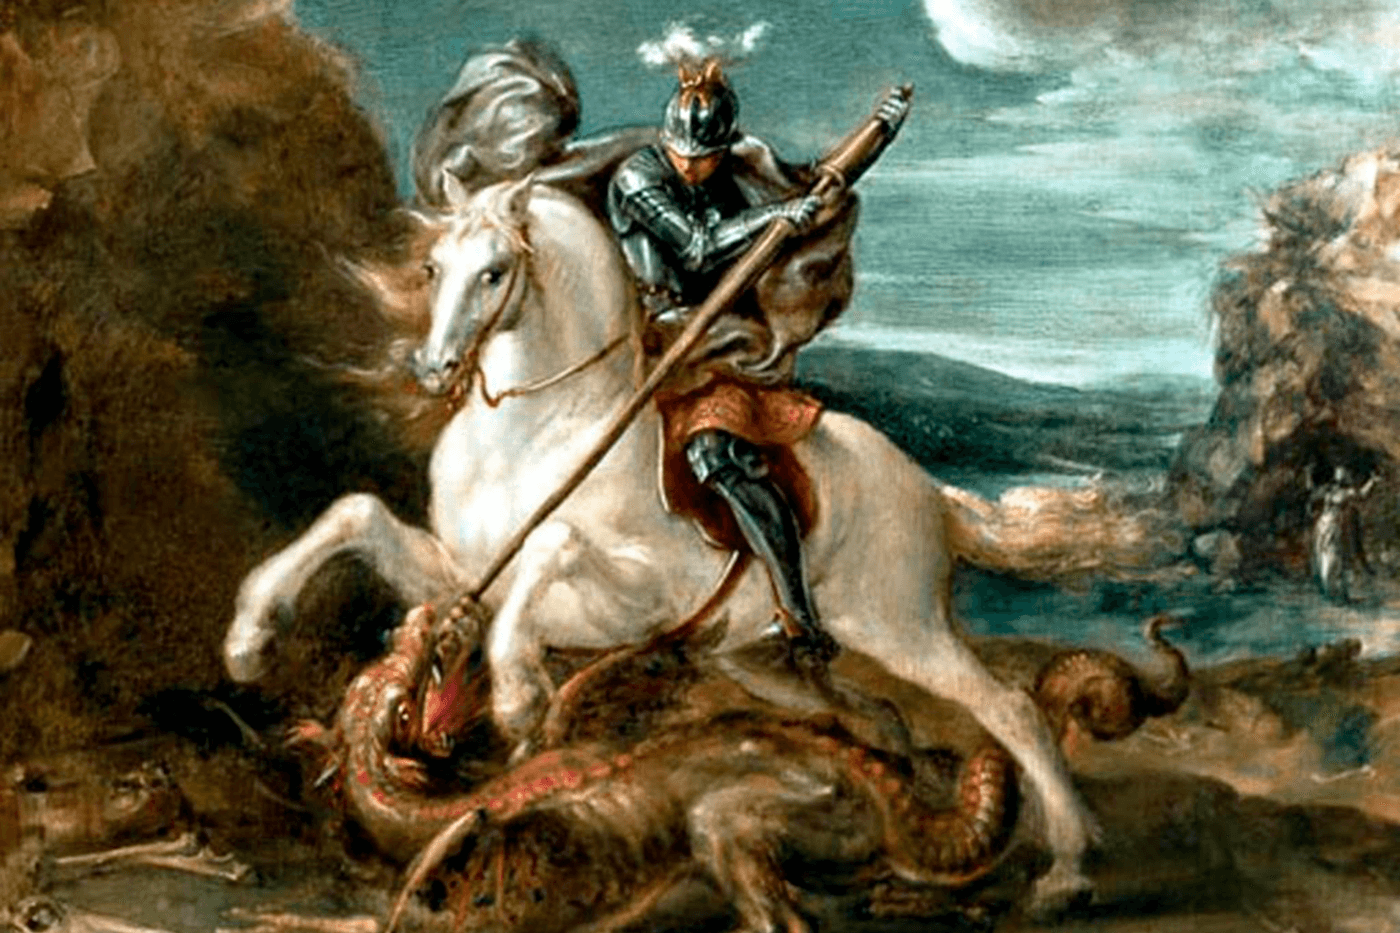 Pintura de São Jorge em seu cavalo, lutando contra um dragão